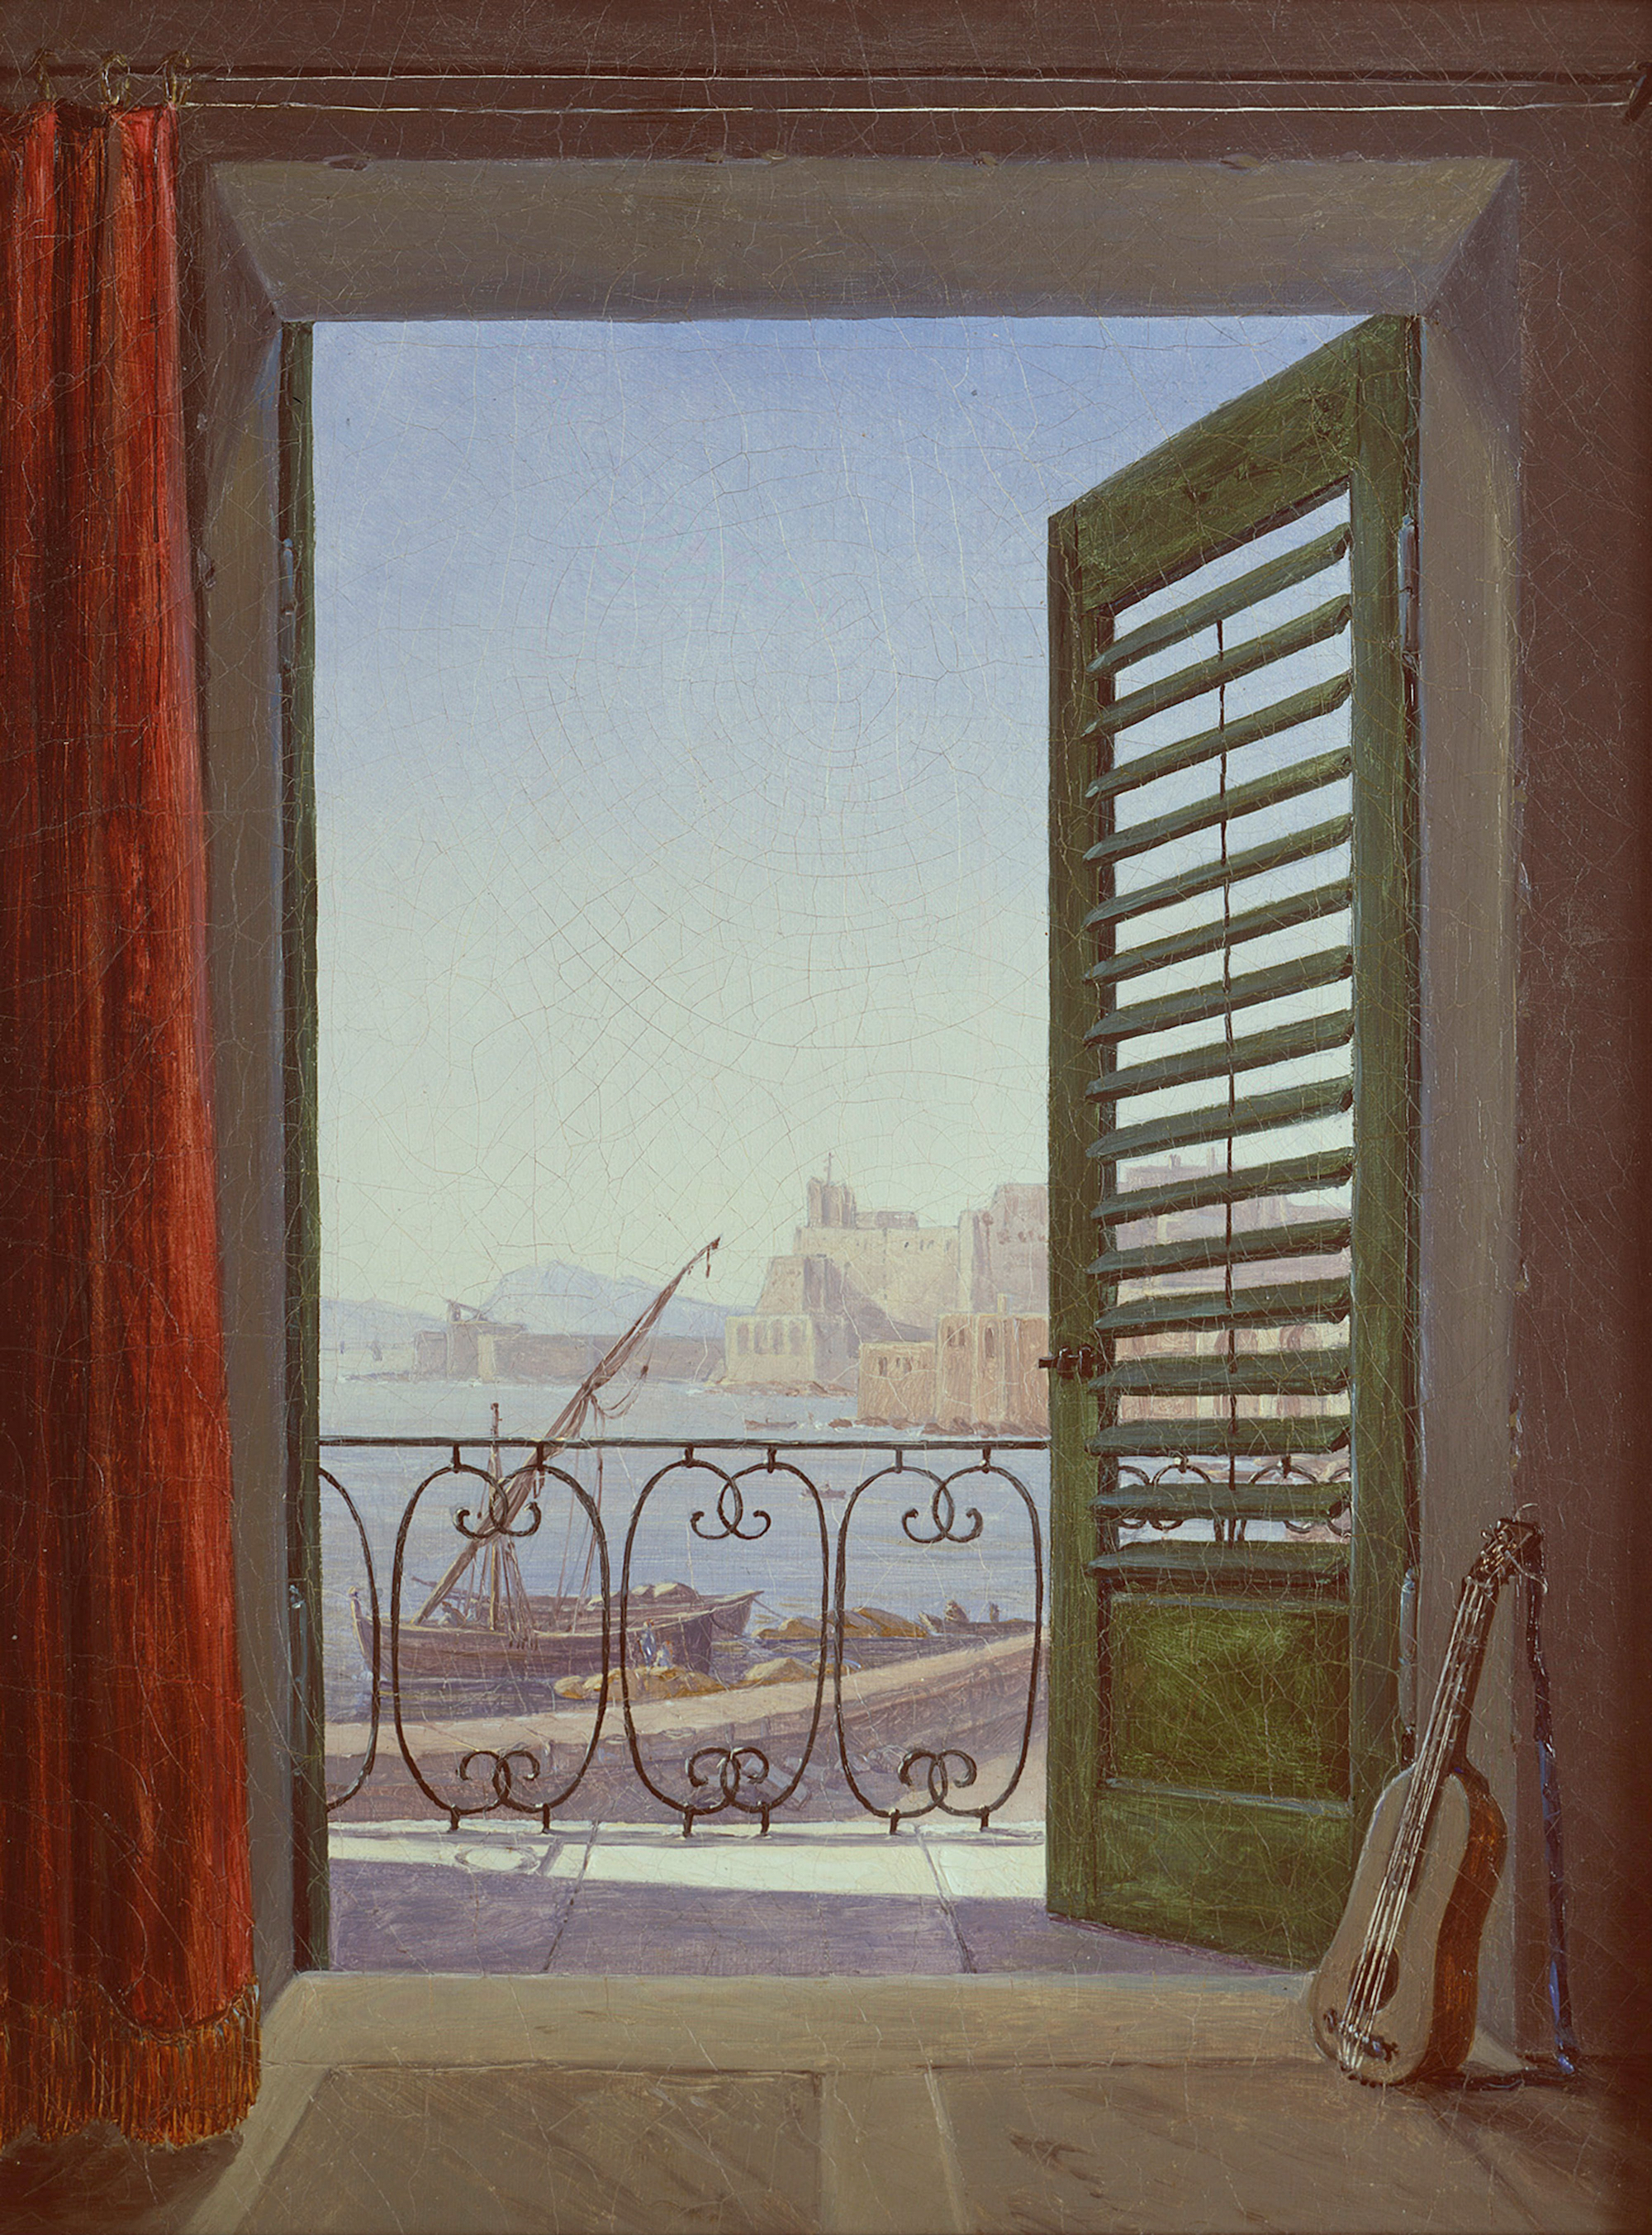 Vista della Baia di Napoli by Carl Gustav Carus - circa 1829/1830 - 213.0 x 284.0 cm Alte Nationalgalerie